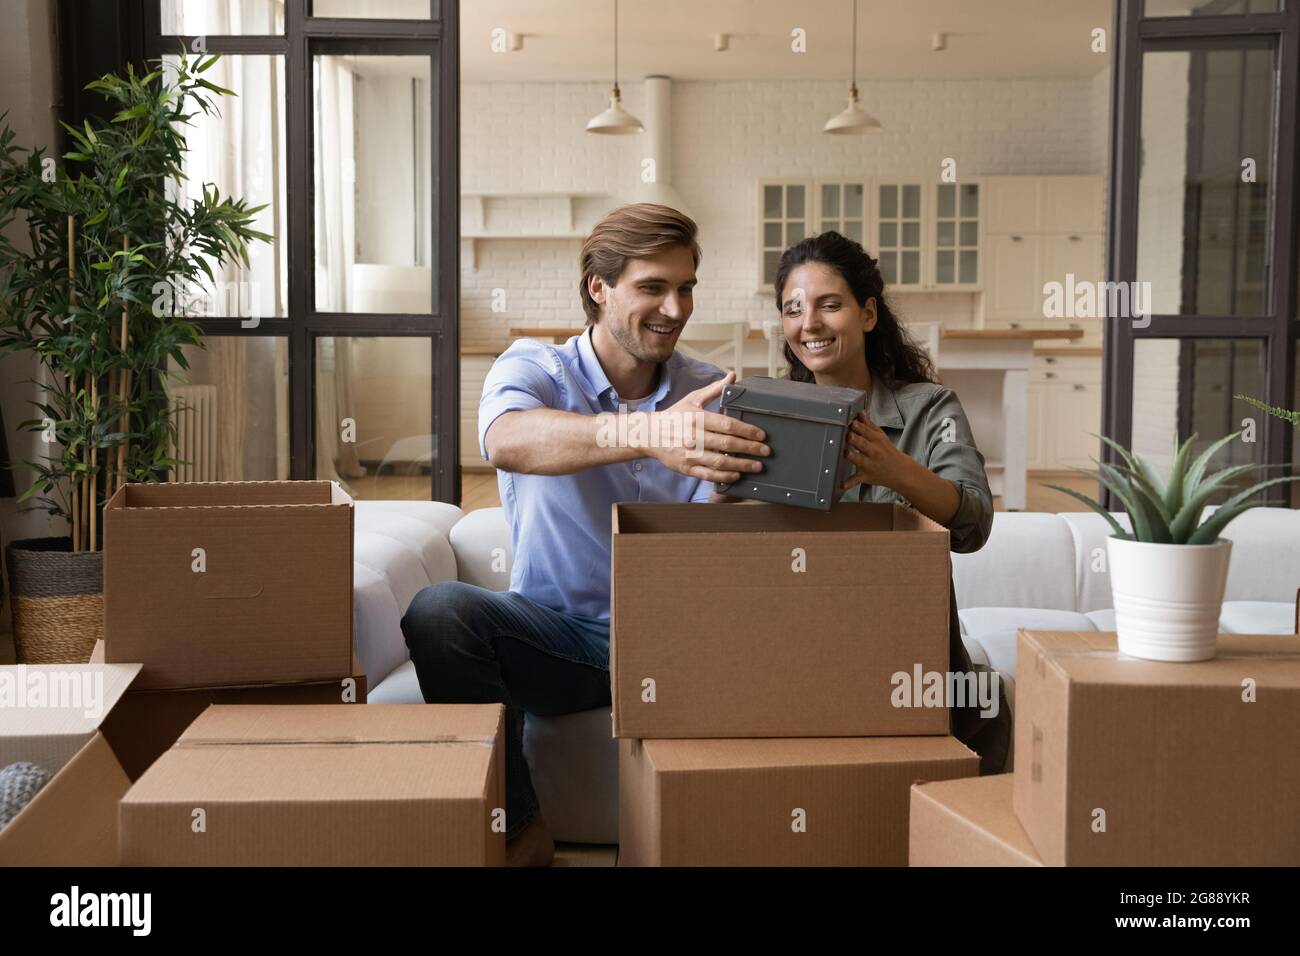 Glückliches Familienpaar, das nach dem Umzug in ein neues Zuhause Sachen auspackt Stockfoto